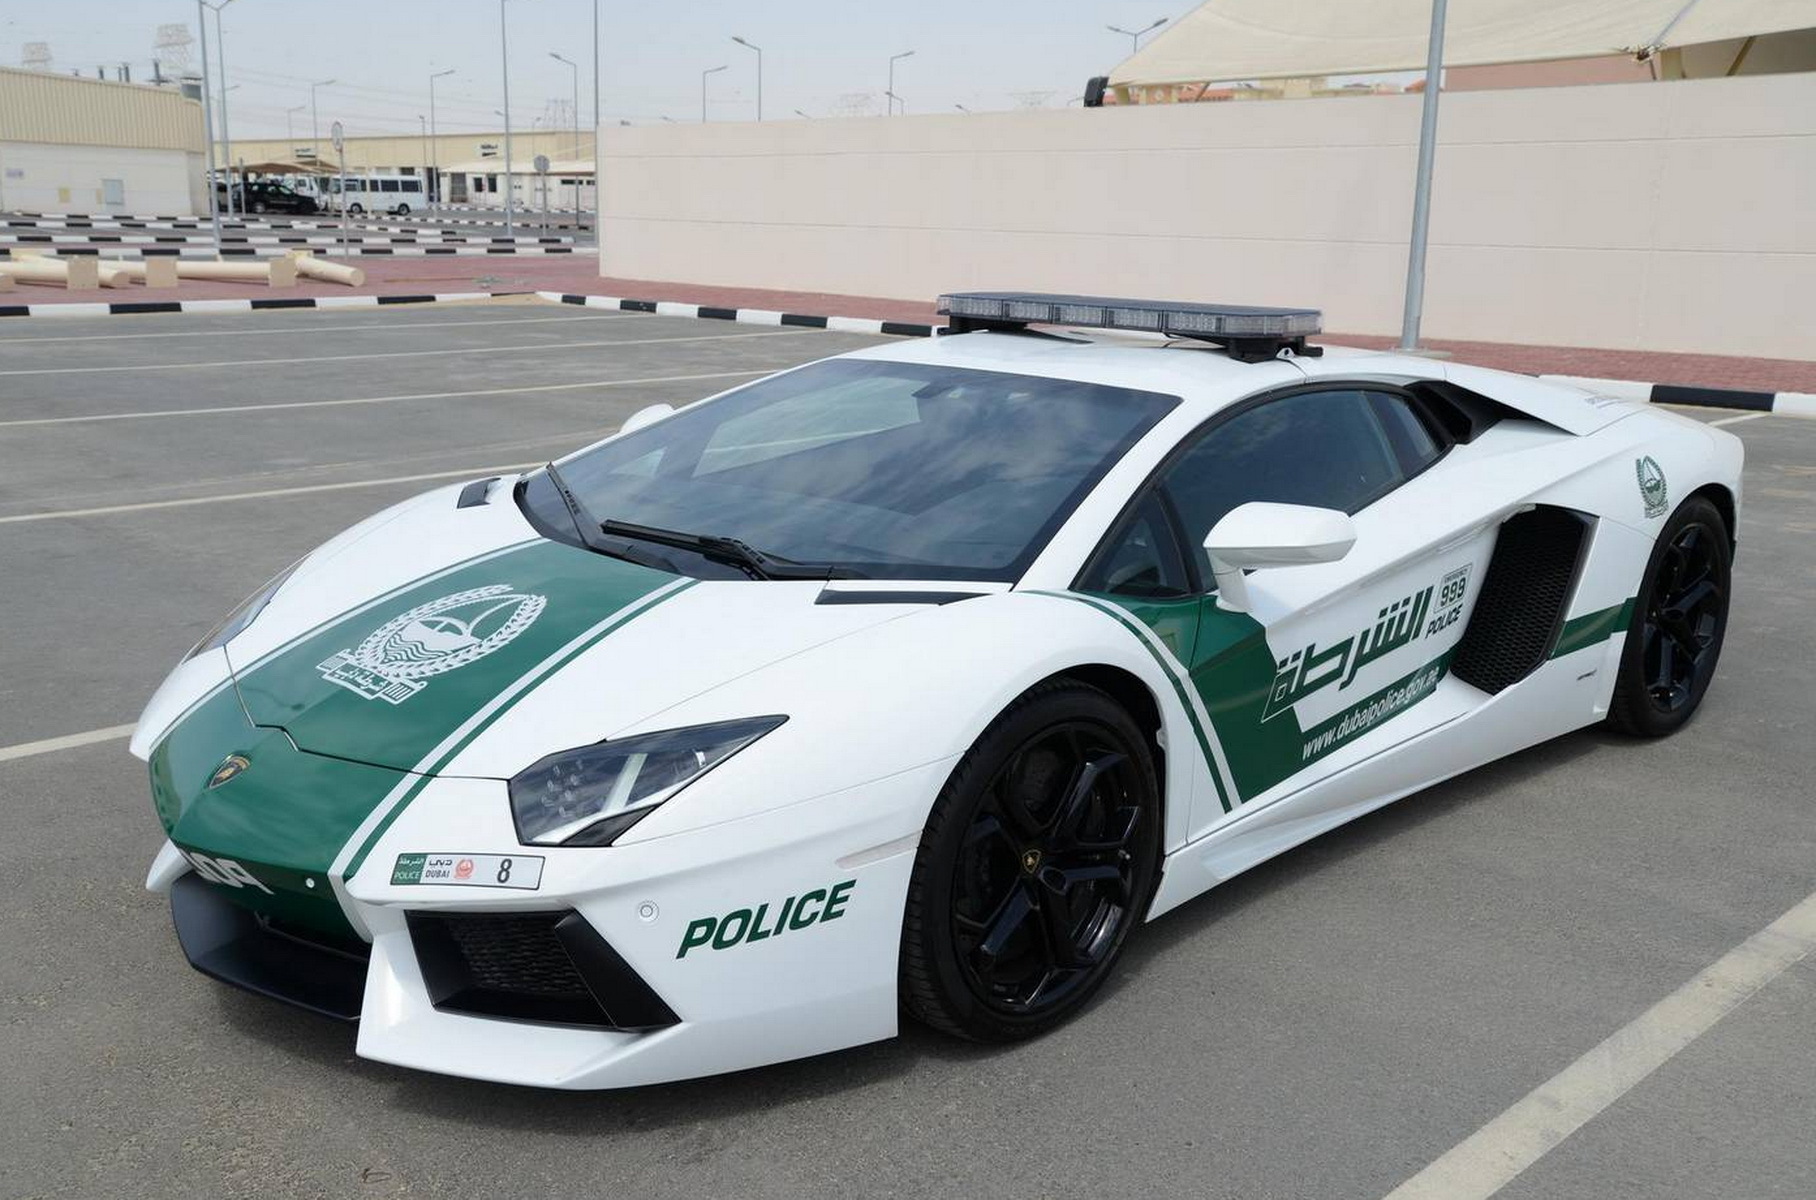 Предыдущий носитель номера «8» в полиции ОАЭ, thenationalnews.com